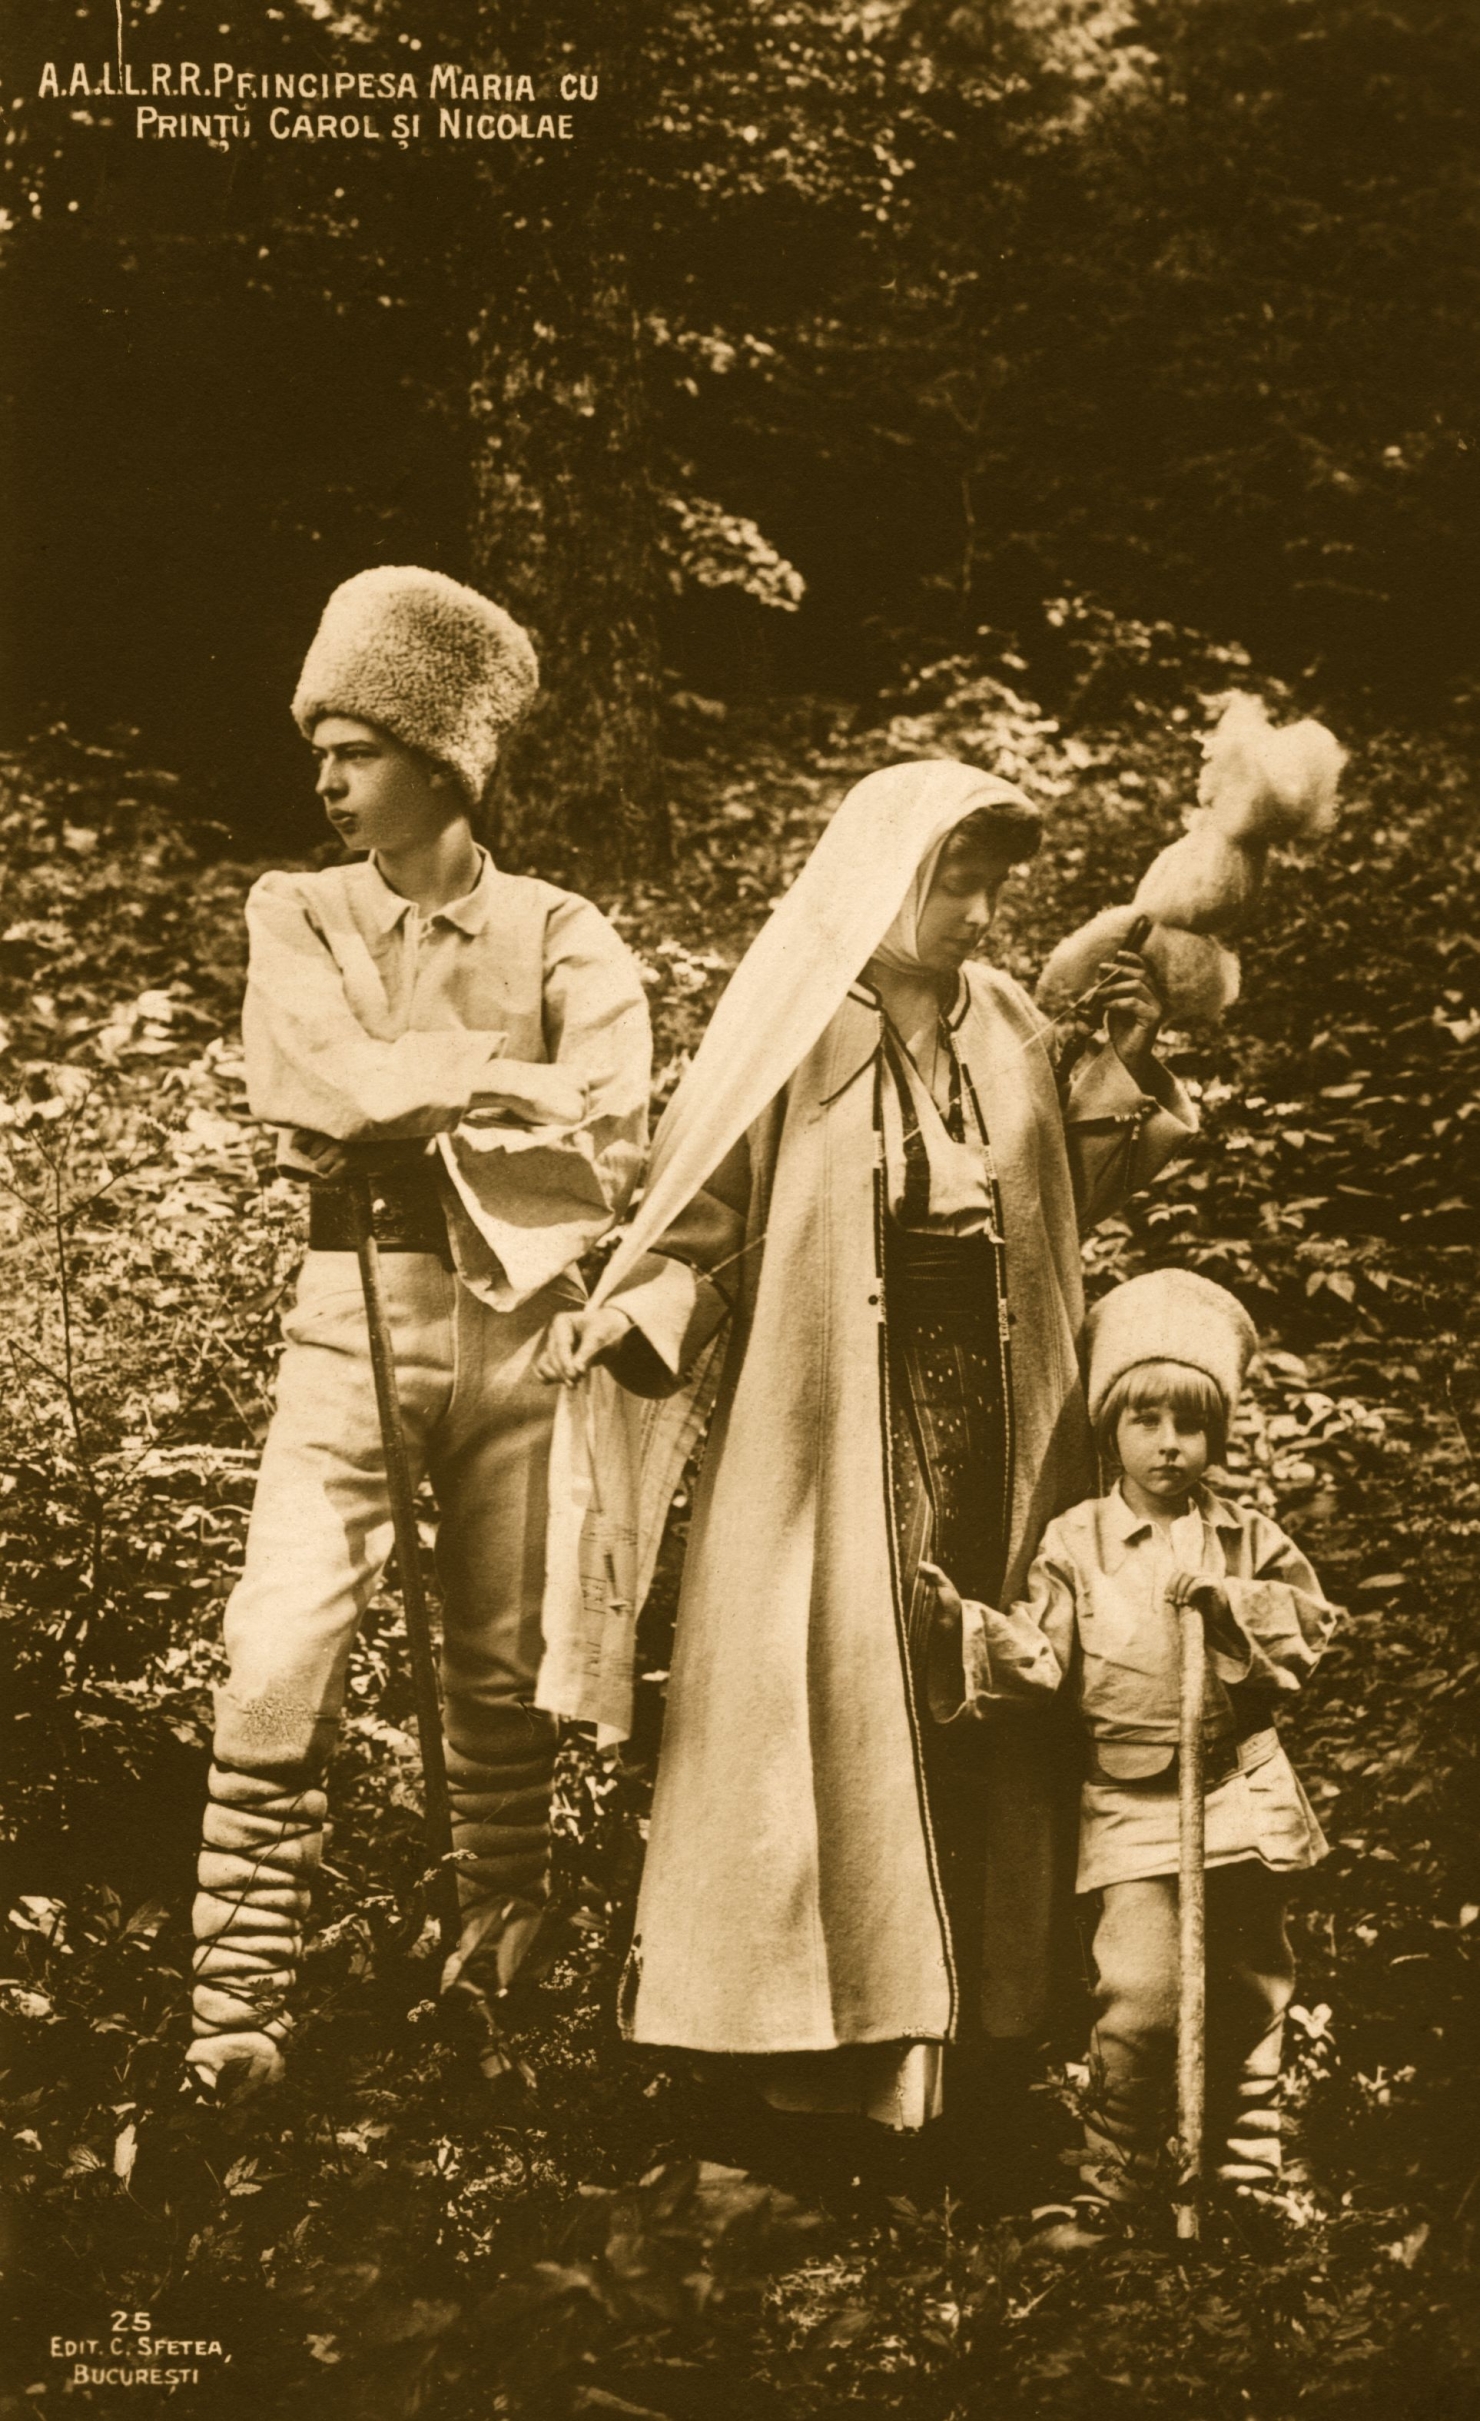 Regina Maria a Romanei (1875 - 1938) impreuna cu fii sai Printul  Carol si Printul Nicolas. 